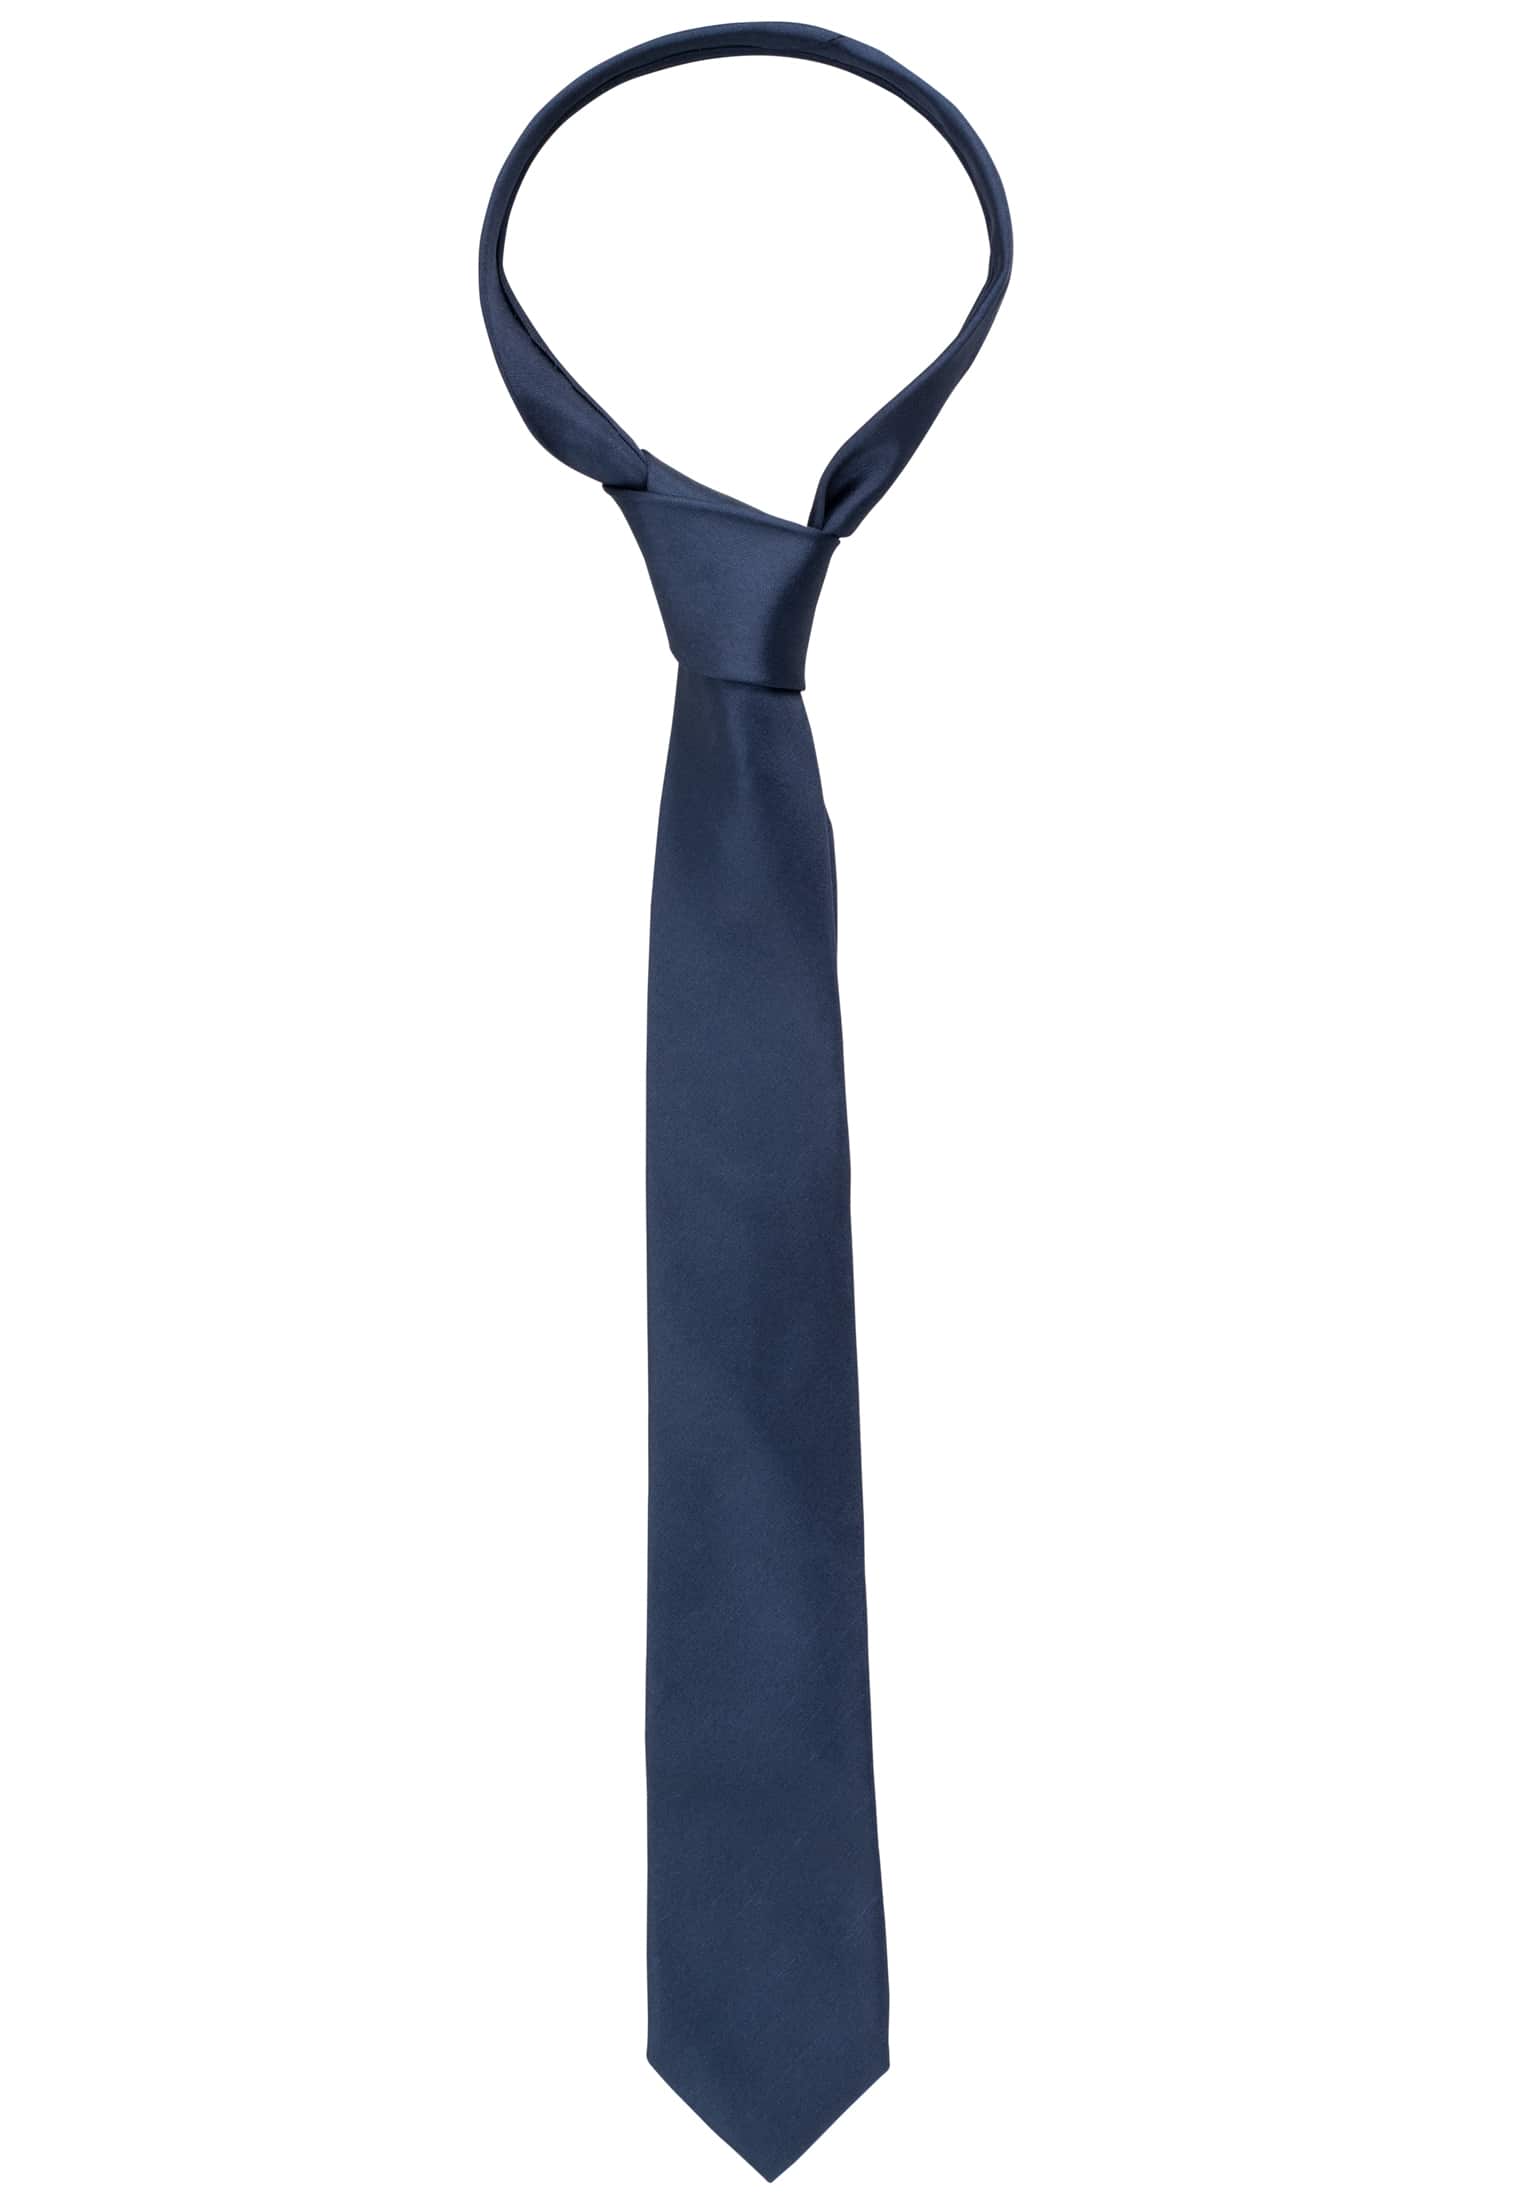 Tie in navy plain